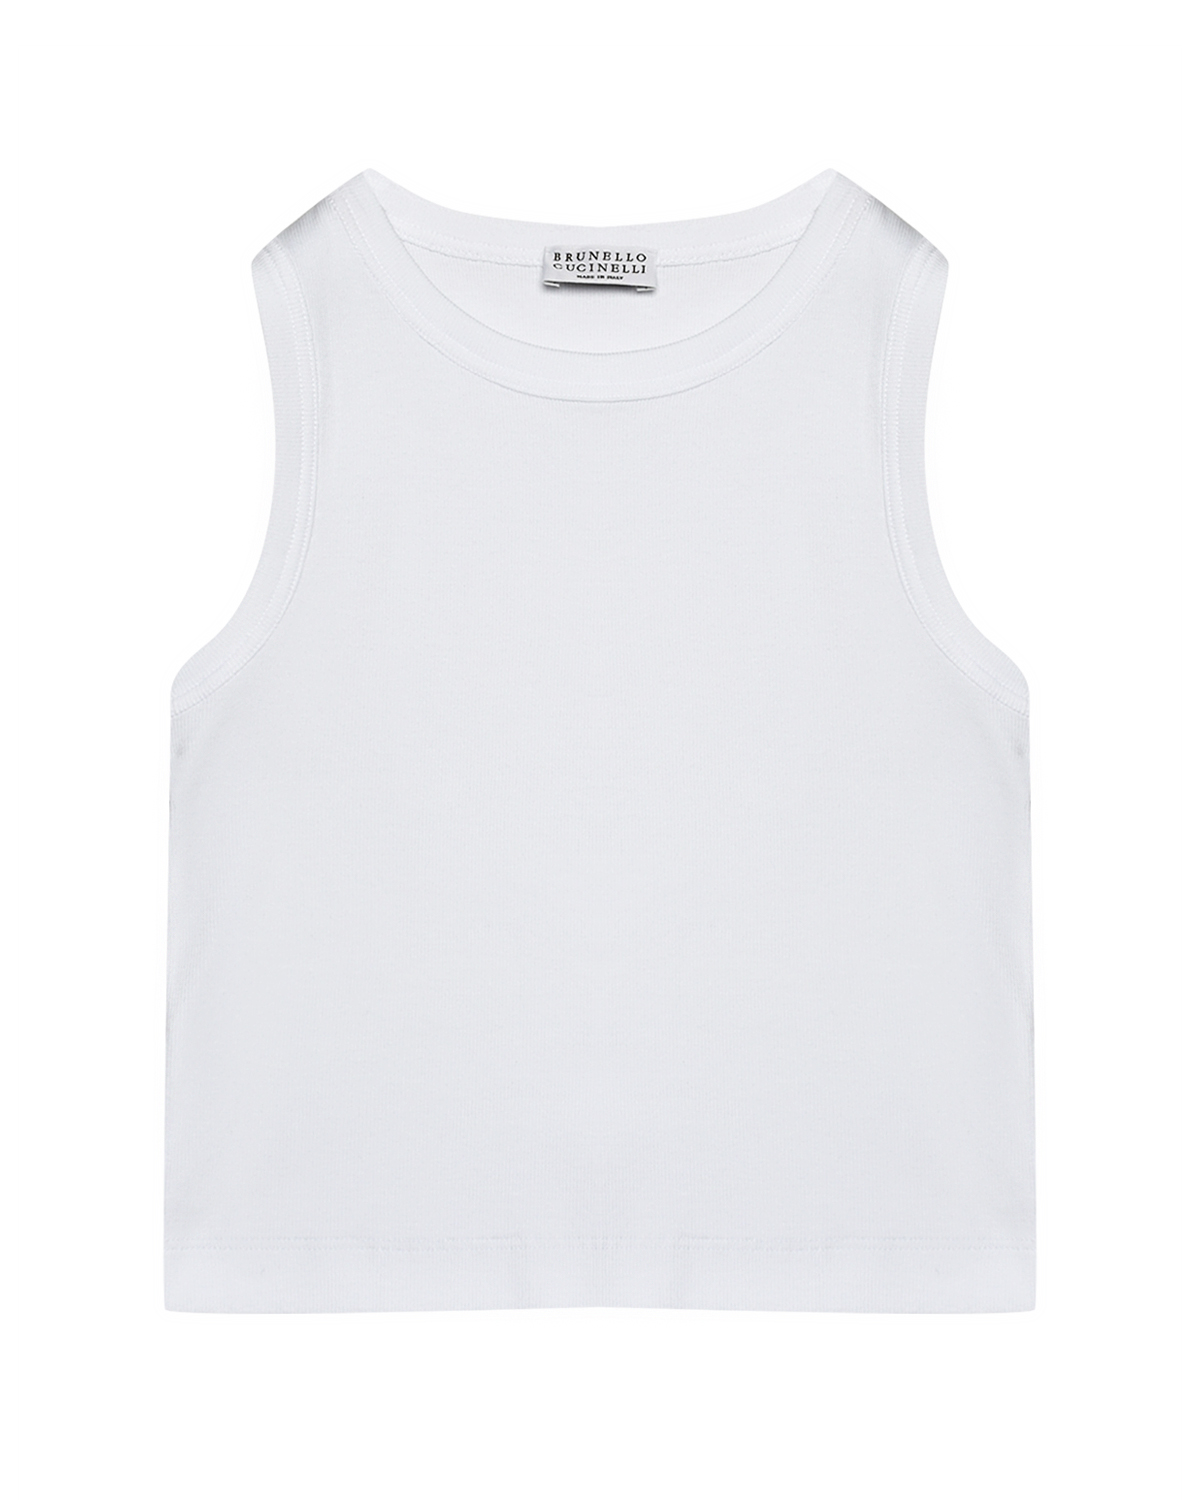 Футболка без рукавов, белая Brunello Cucinelli футболка со стразами на кармане brunello cucinelli